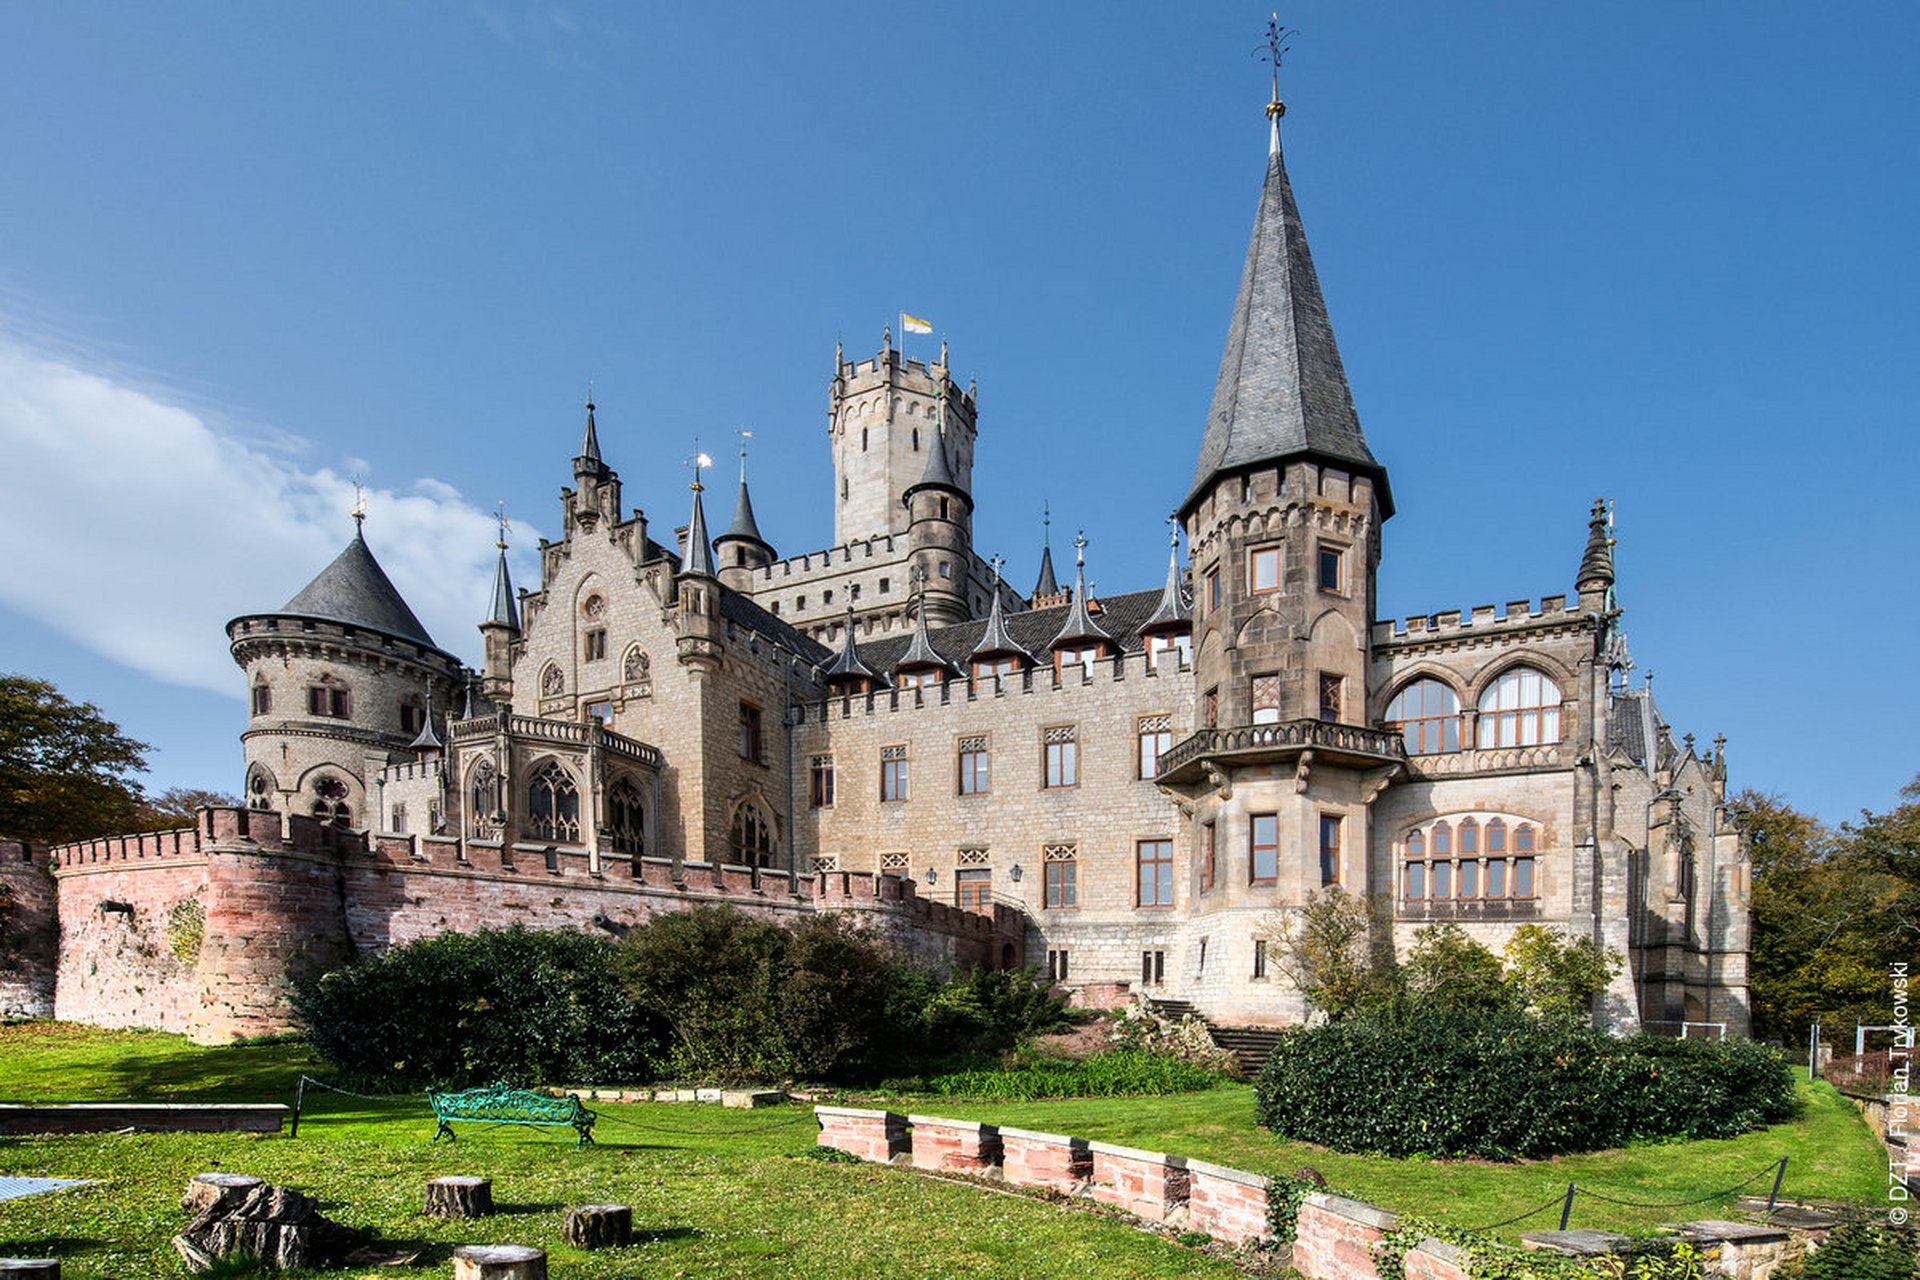 玛丽娅城堡(schloss marienburg)堪称是一座真爱殿堂,玛莉娅王后和